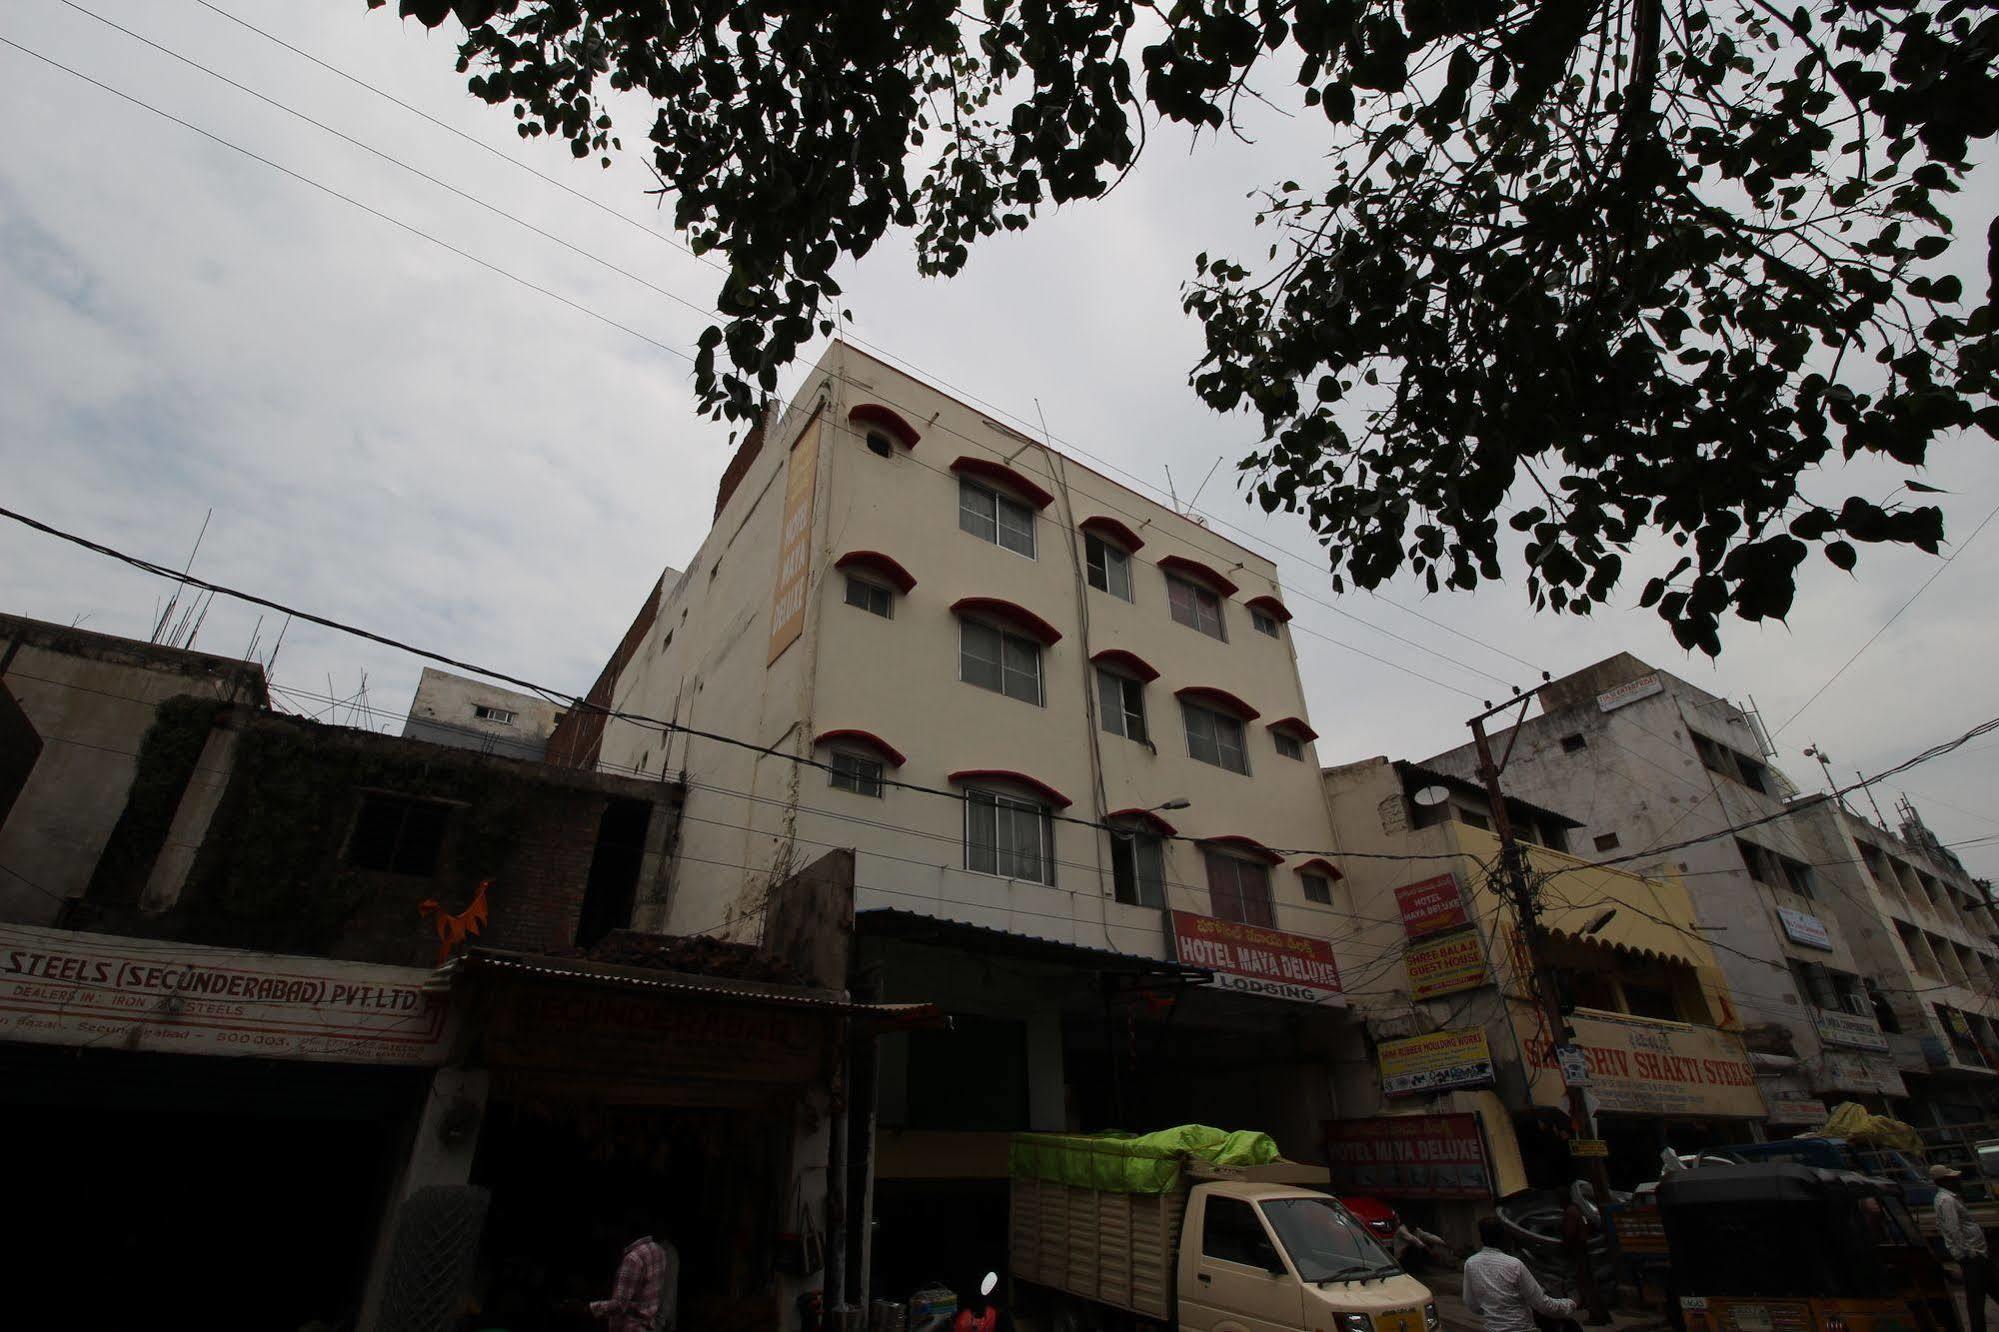 Hotel Maya Deluxe Hyderabad Exterior photo